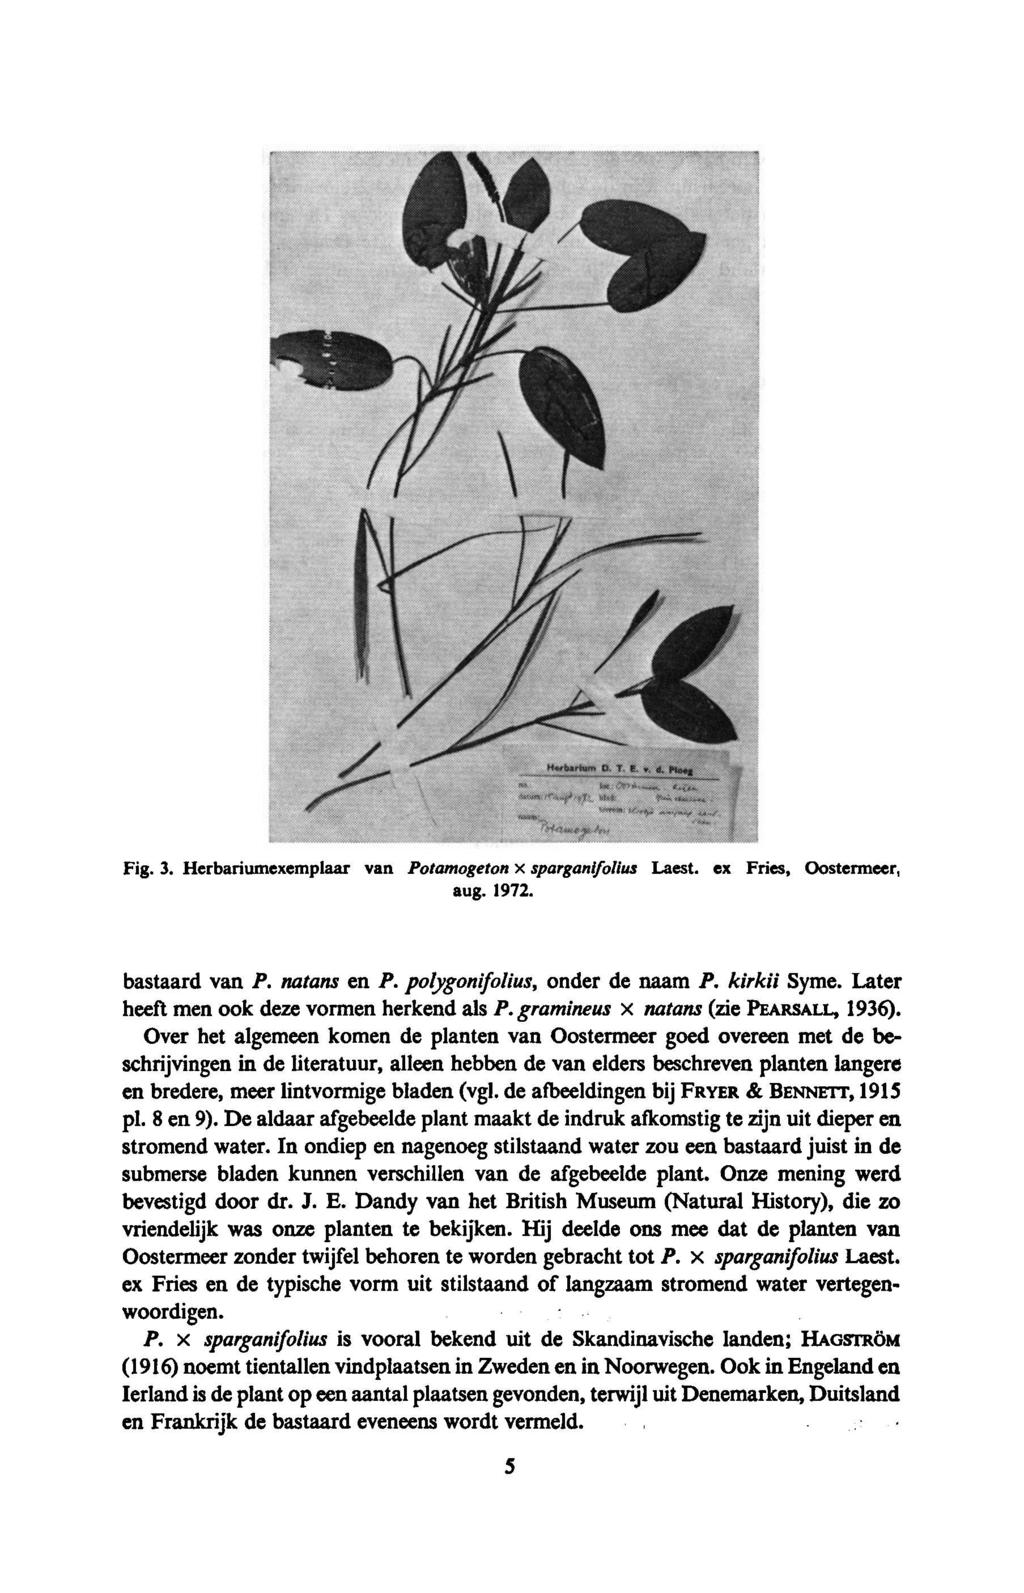 Fig. 3. Herbariumexemplaar van Potamogeton x sparganifolius Laest. ex Fries, Oostermeer, aug. 1972. bastaard van P. natans en P. polygonifolius, onder de naam P. kirkii Syme.